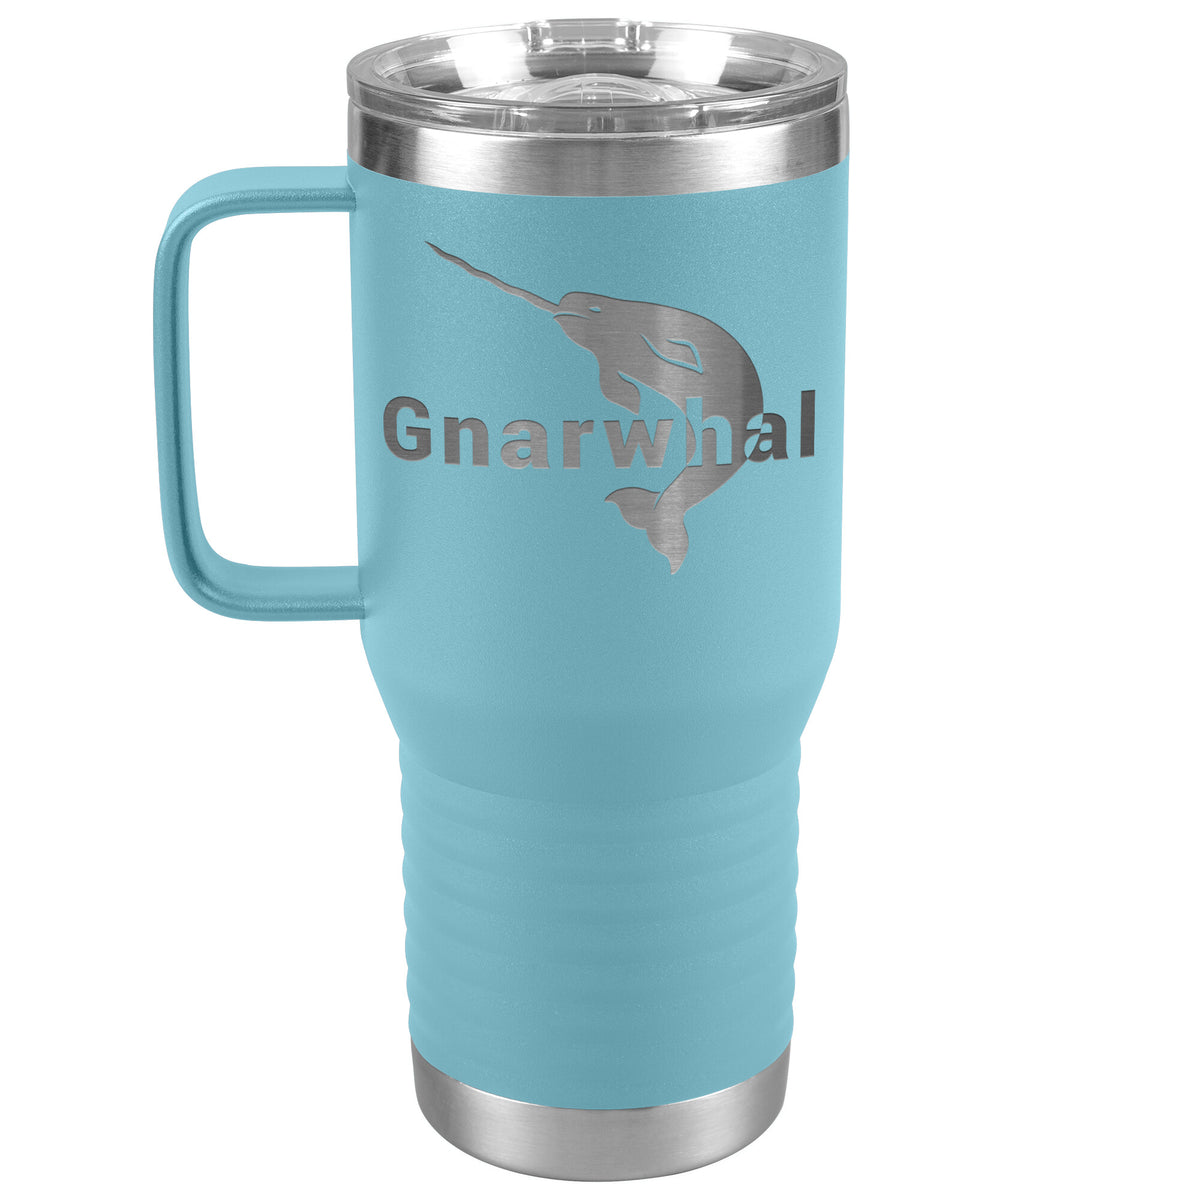 Gnarwhal Travel Mug